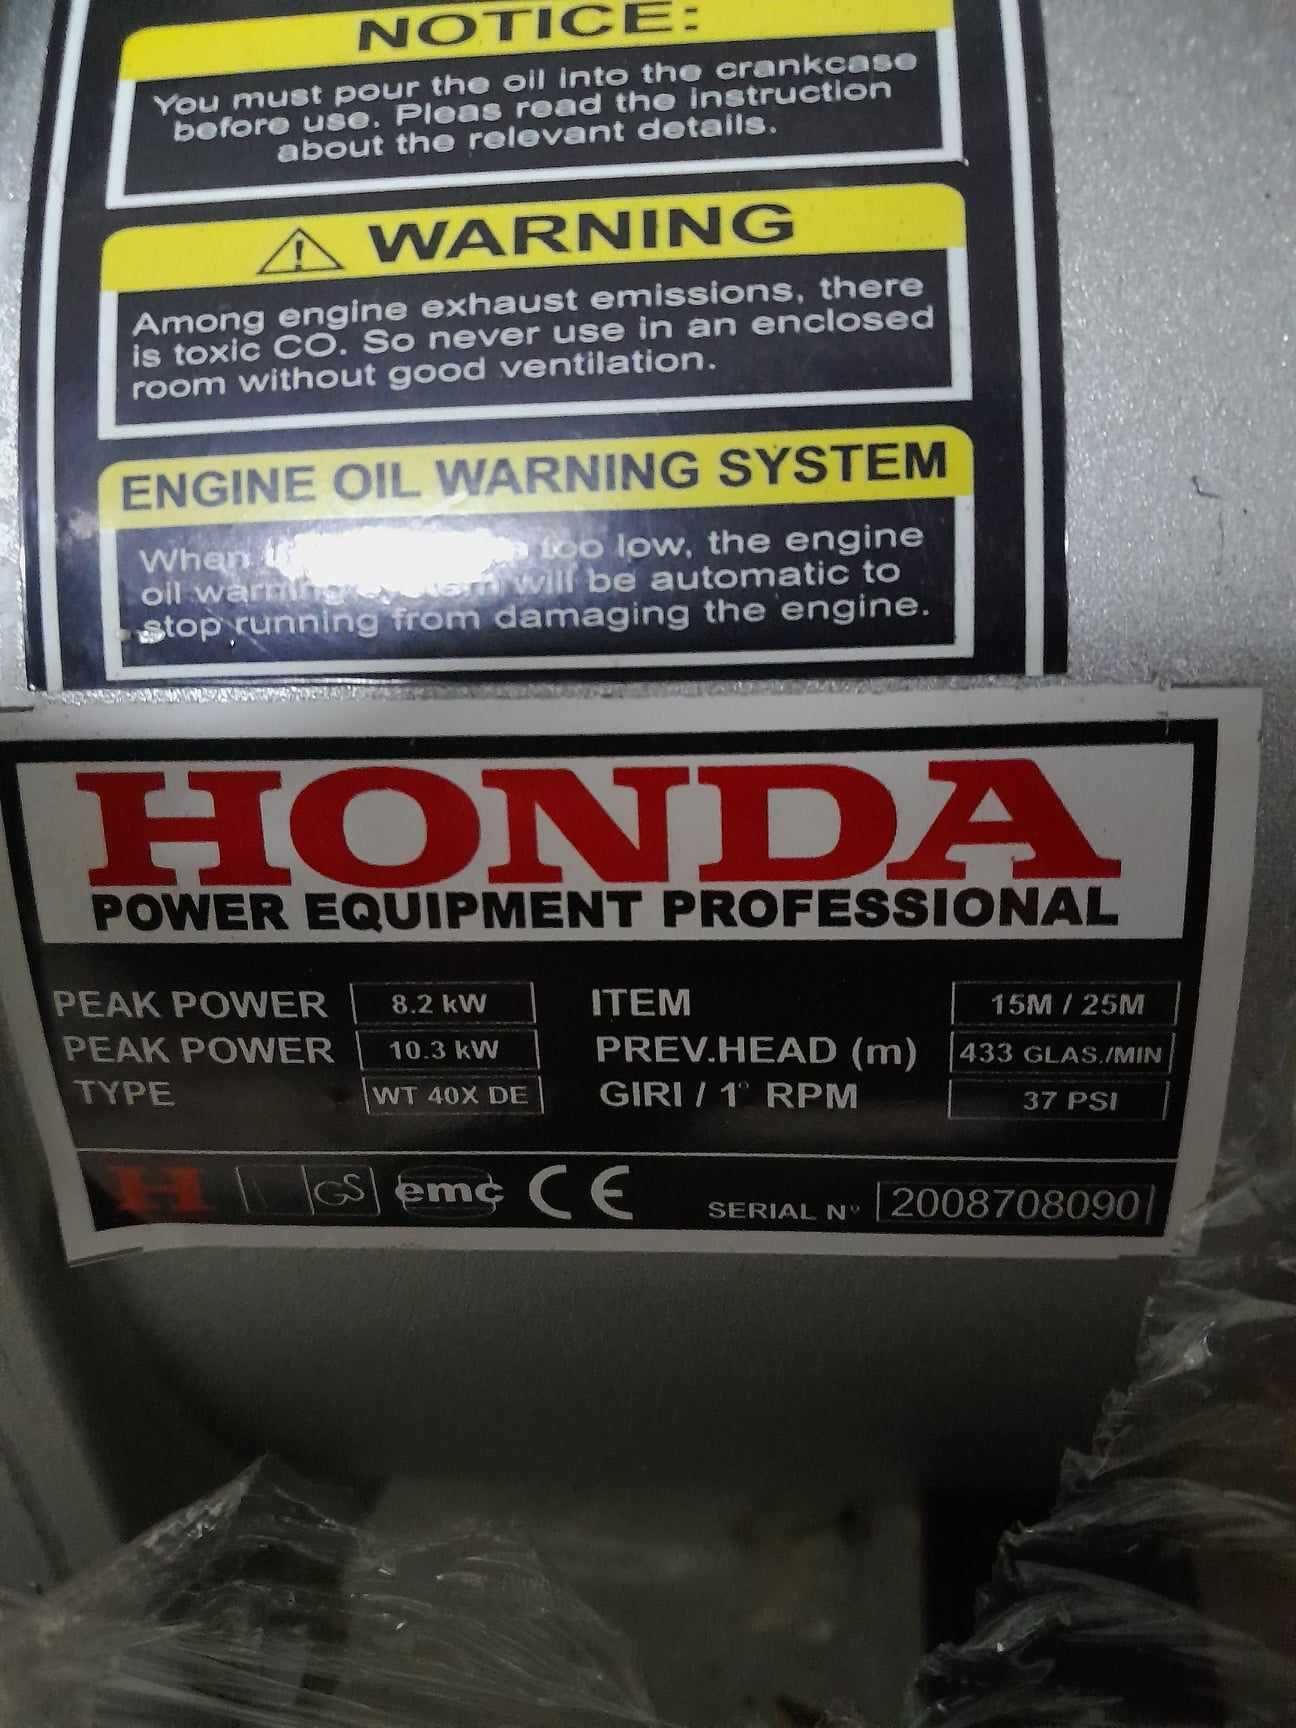 NOWA Pompa szlamowa Honda WT40 X DE 8,2 kW